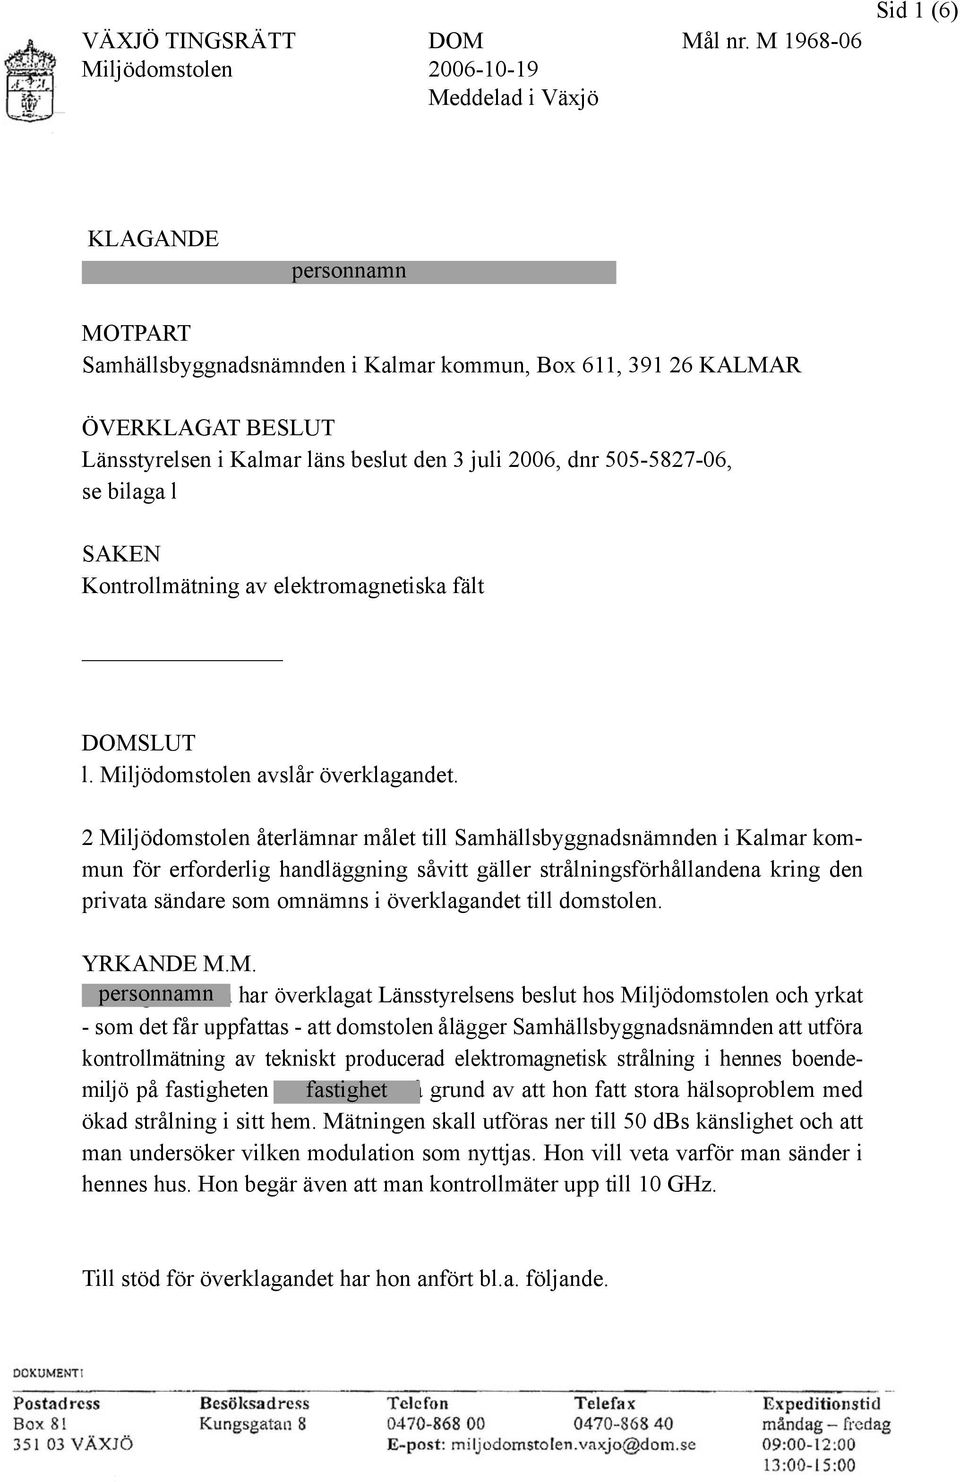 ÖVERKLAGAT BESLUT Länsstyrelsen i Kalmar läns beslut den 3 juli 2006, dnr 505-5827-06, se bilaga l SAKEN Kontrollmätning av elektromagnetiska fält SLUT l. Miljödomstolen avslår överklagandet.